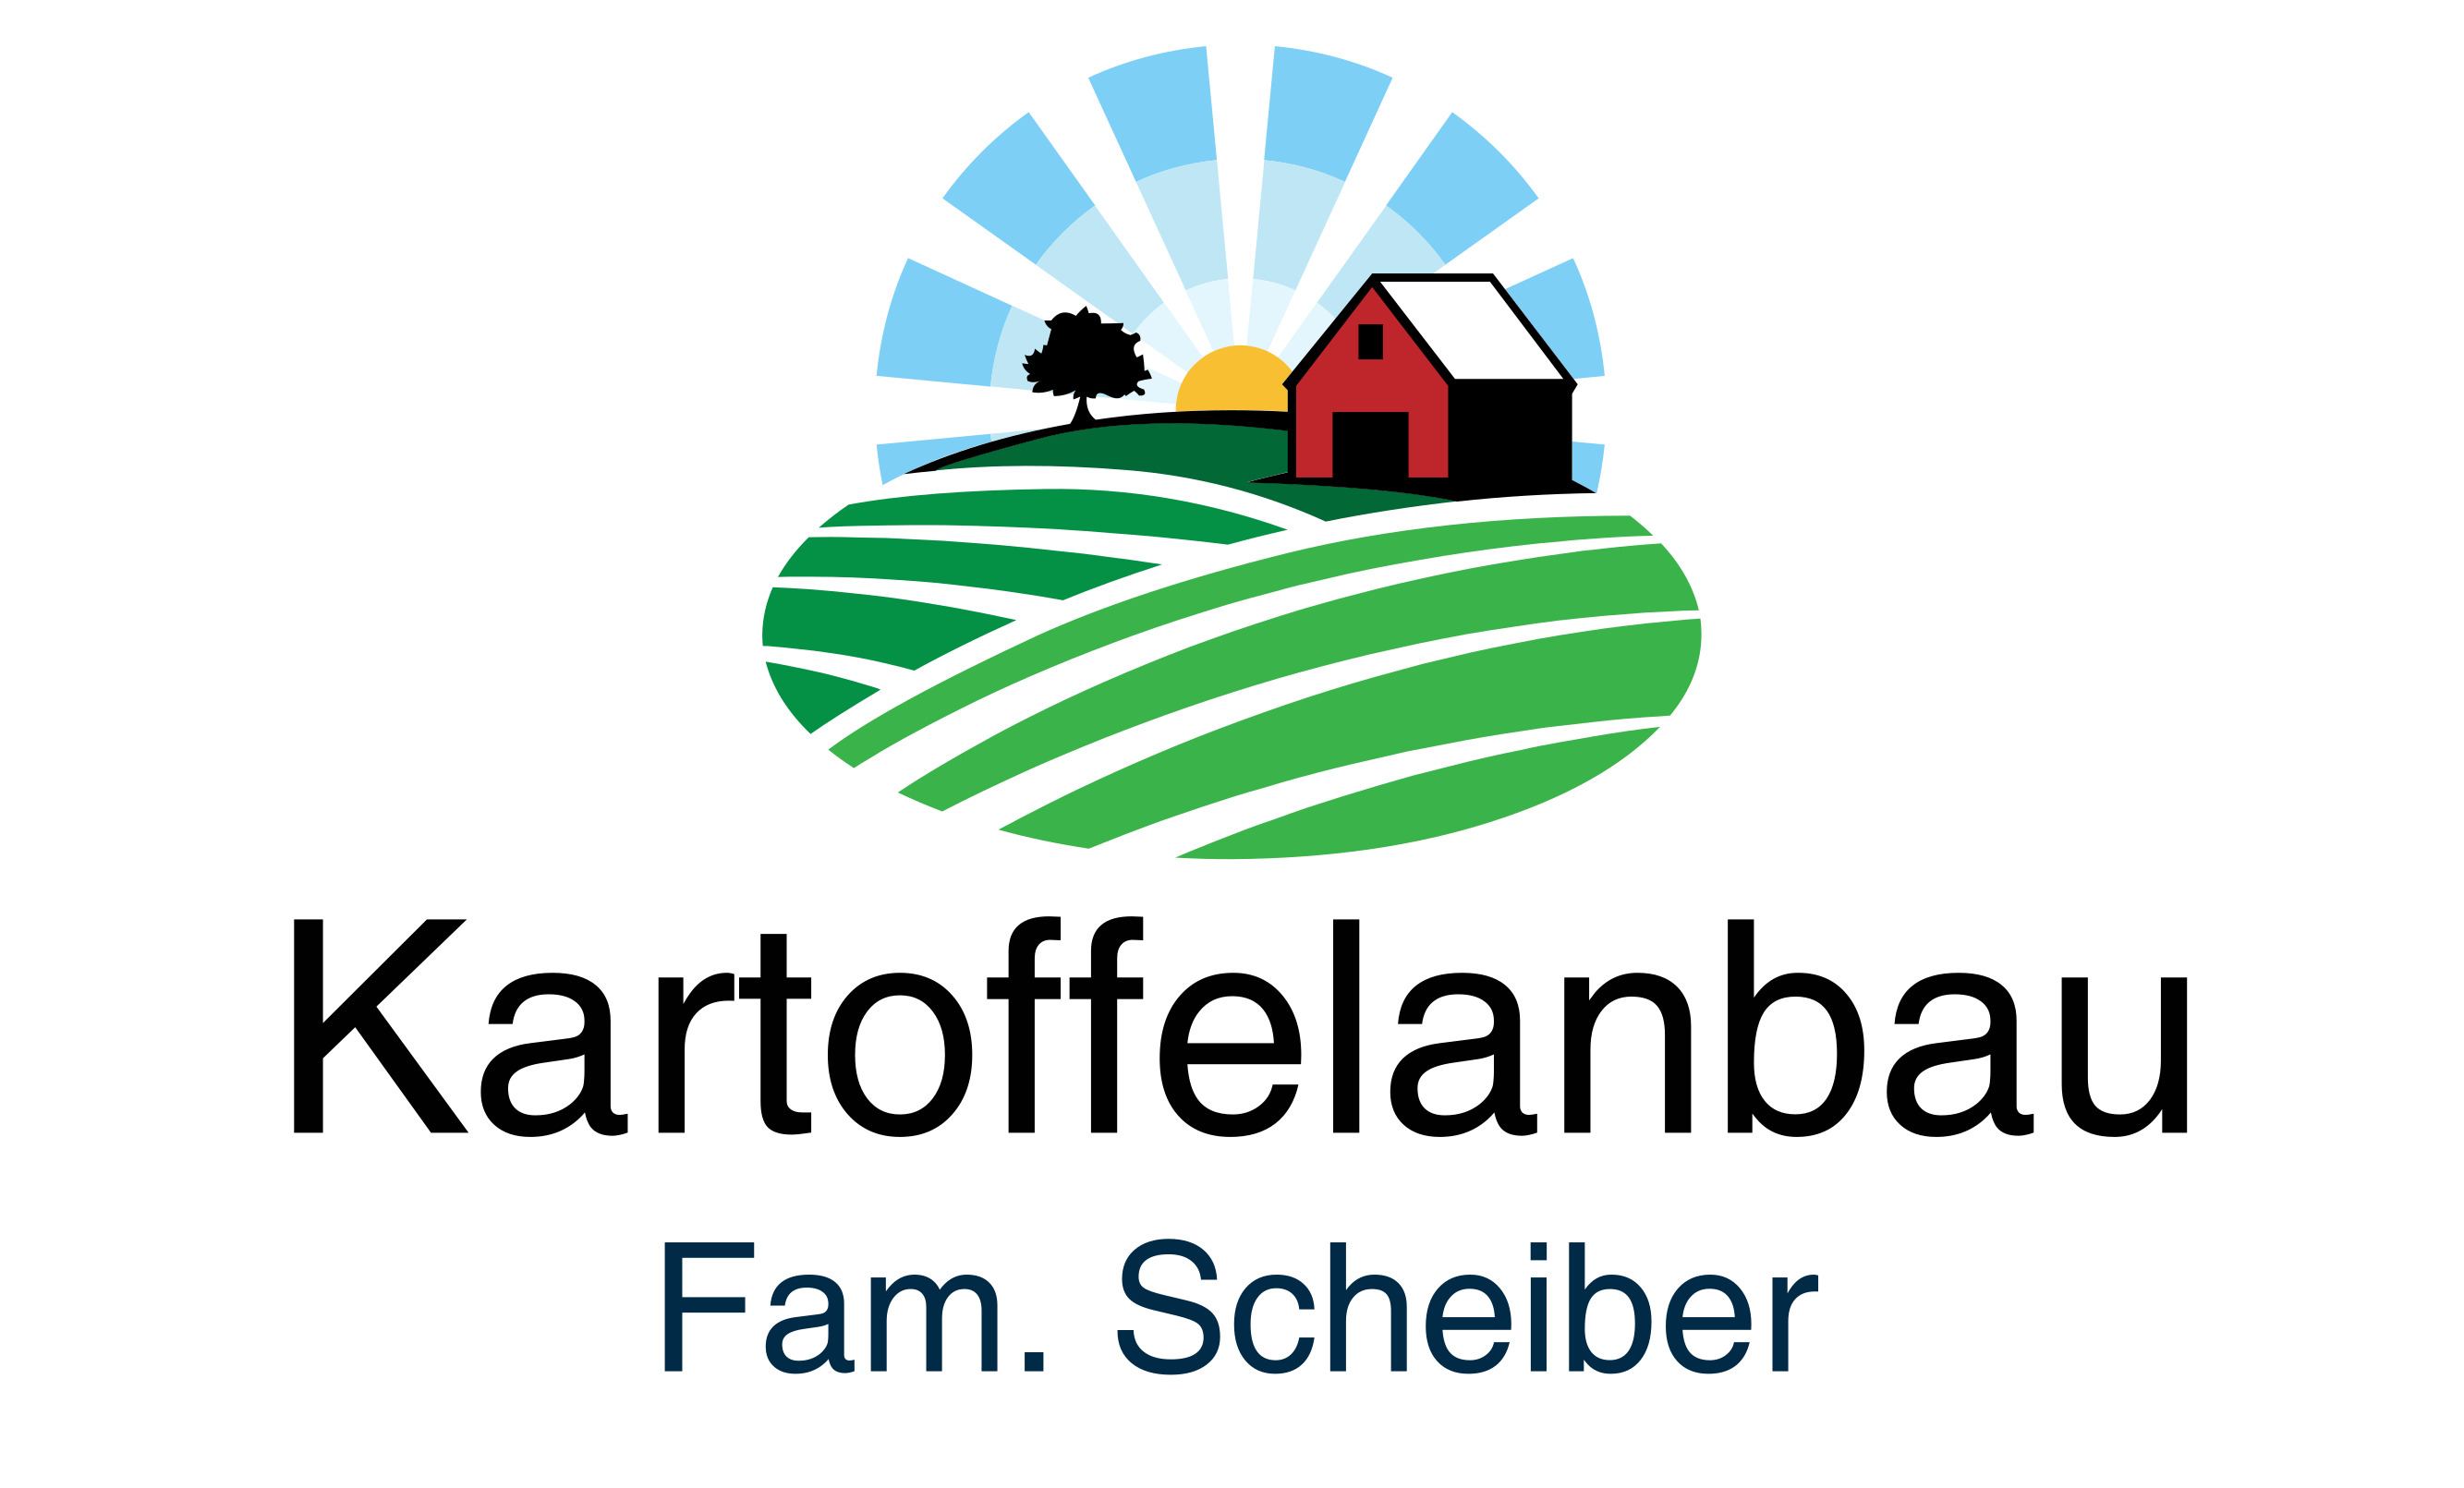 Kartoffelanbau Familie Scheiber